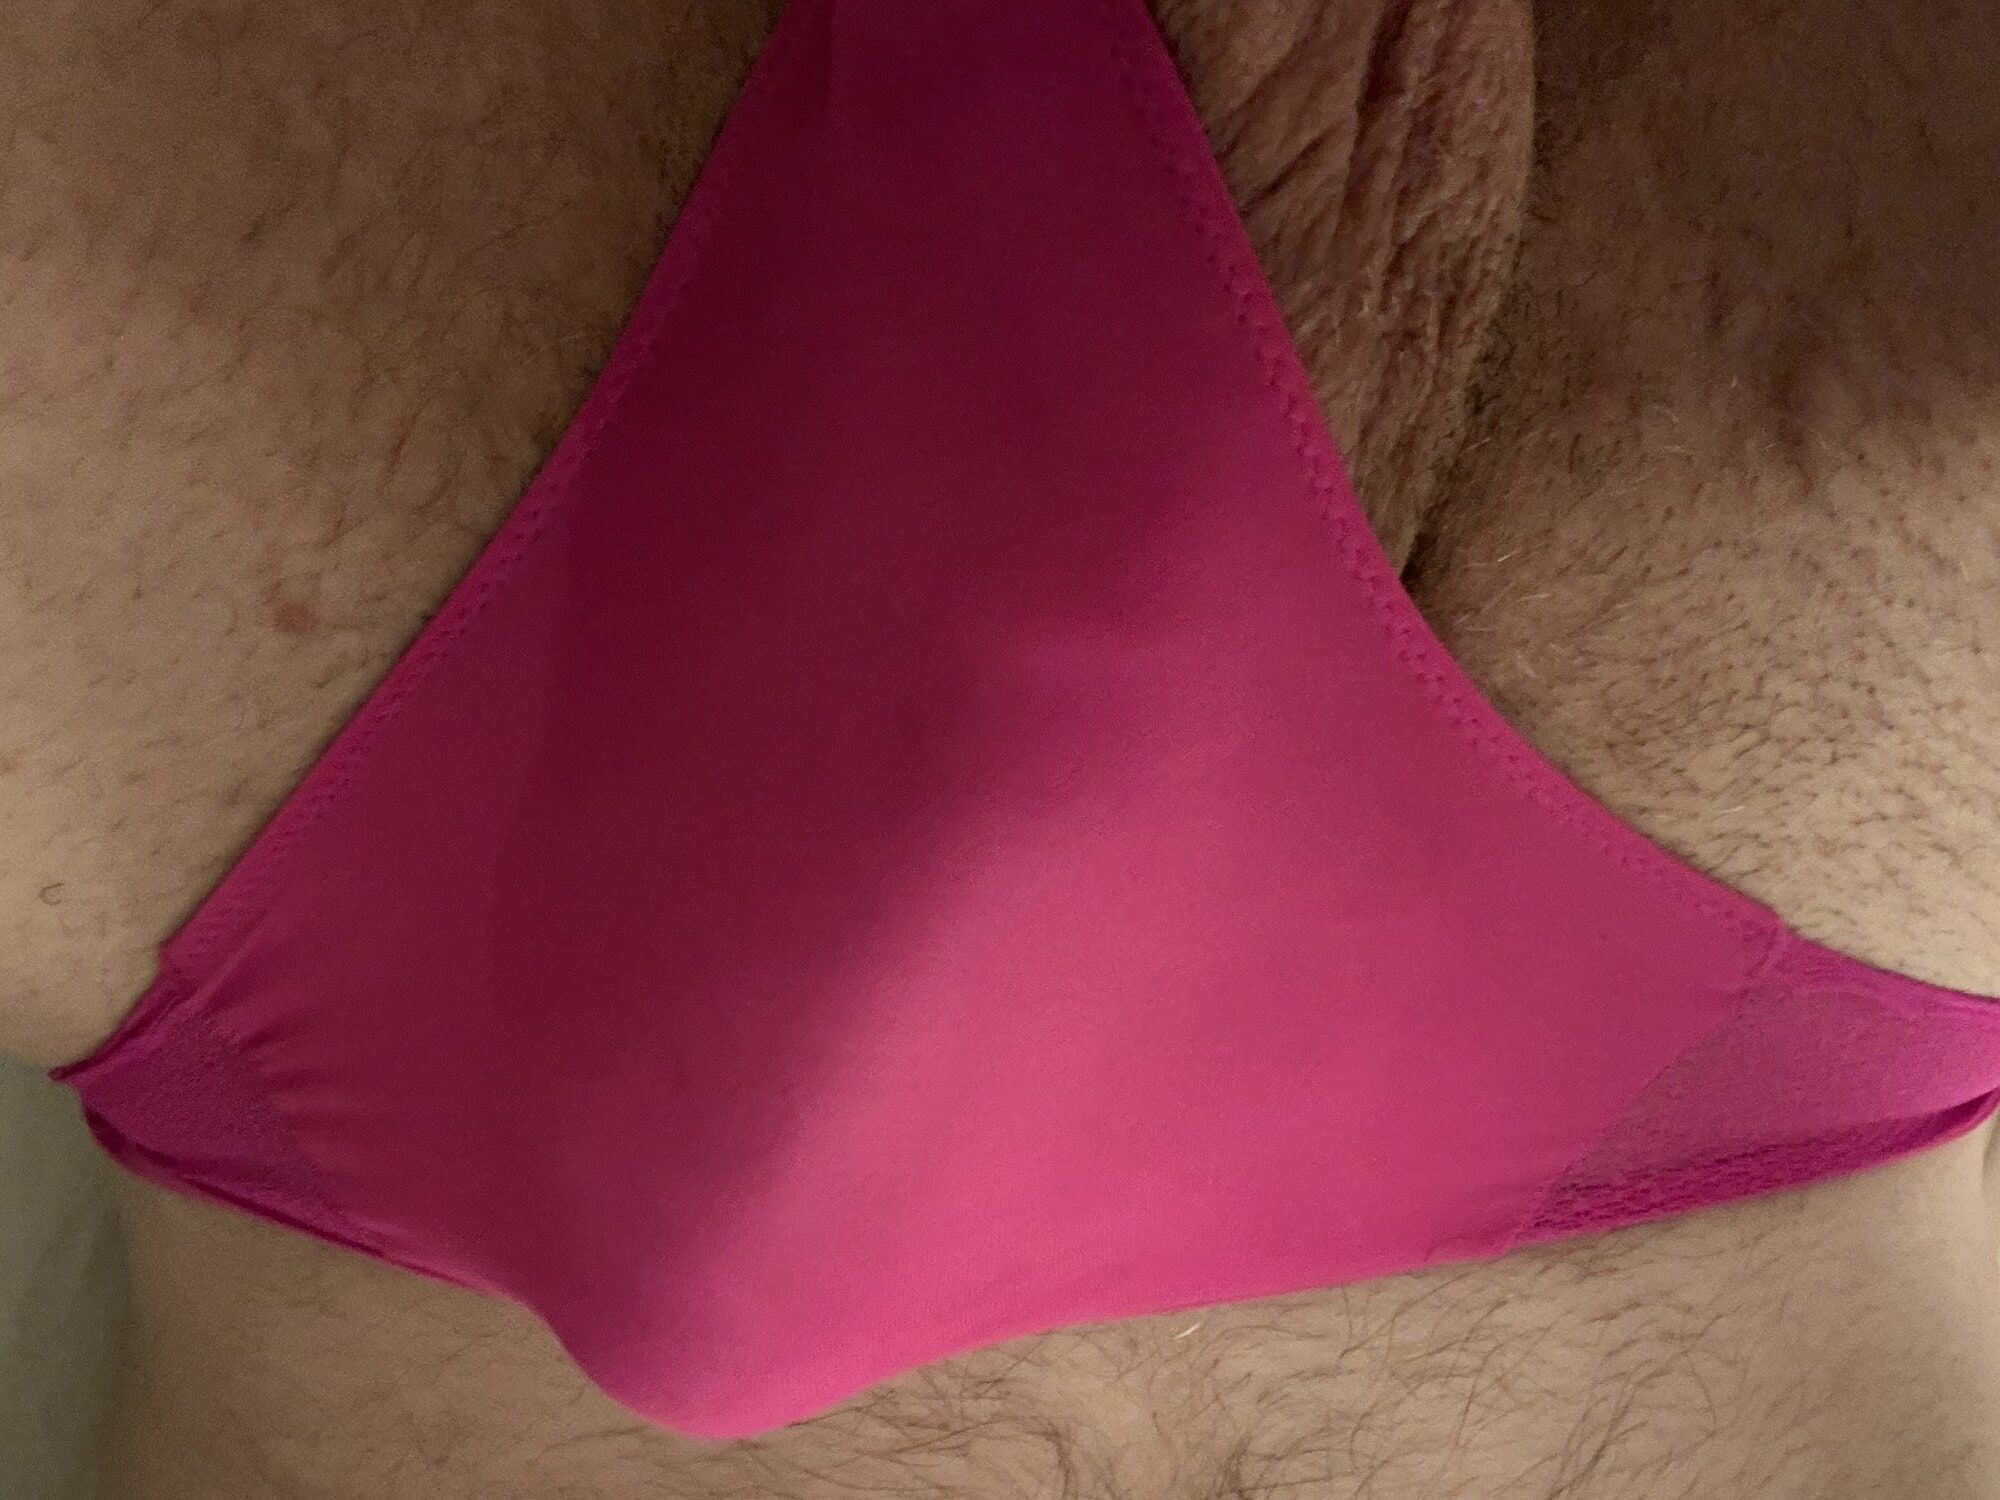 Perfect Penis in Pink Panties